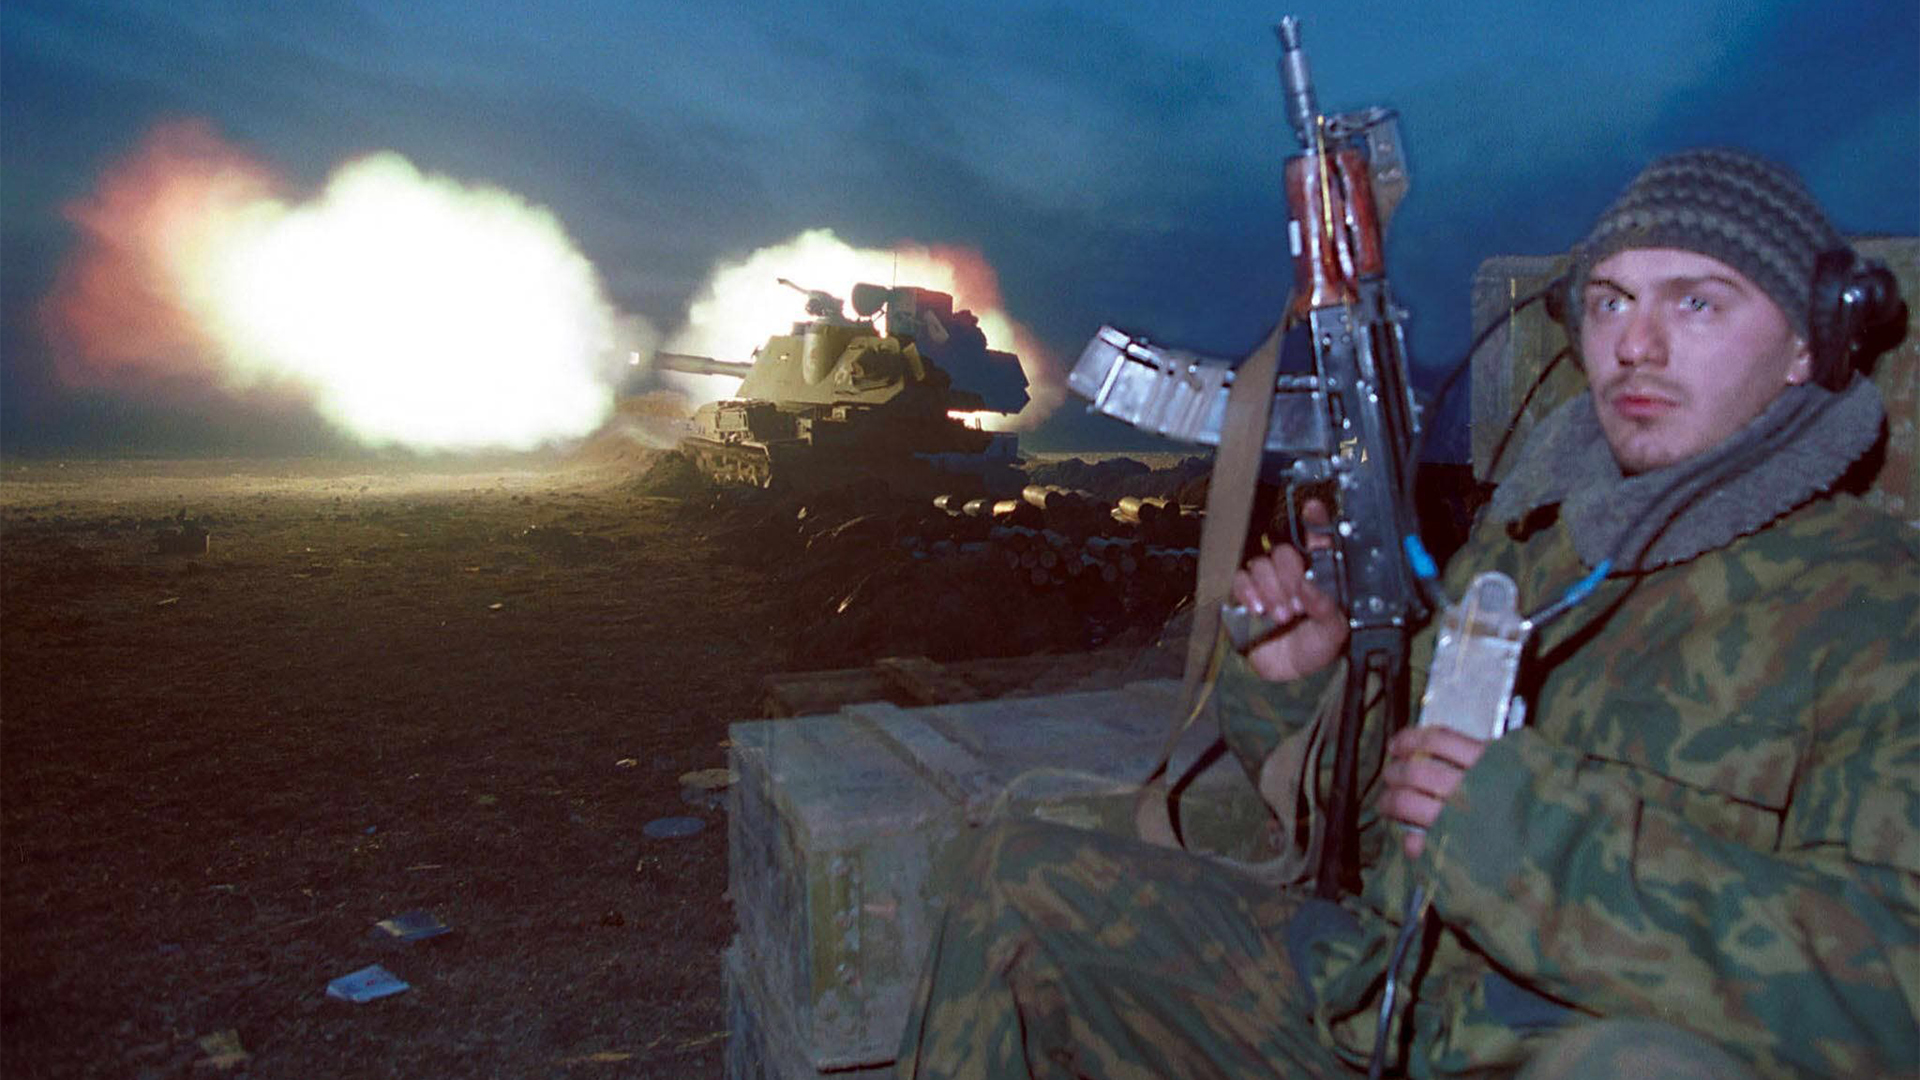 Ein bewaffneter Soldat steht vor einem im Hintergrund brennenden Panzer (Archivbild vom 13.01.2000). | picture-alliance / dpa